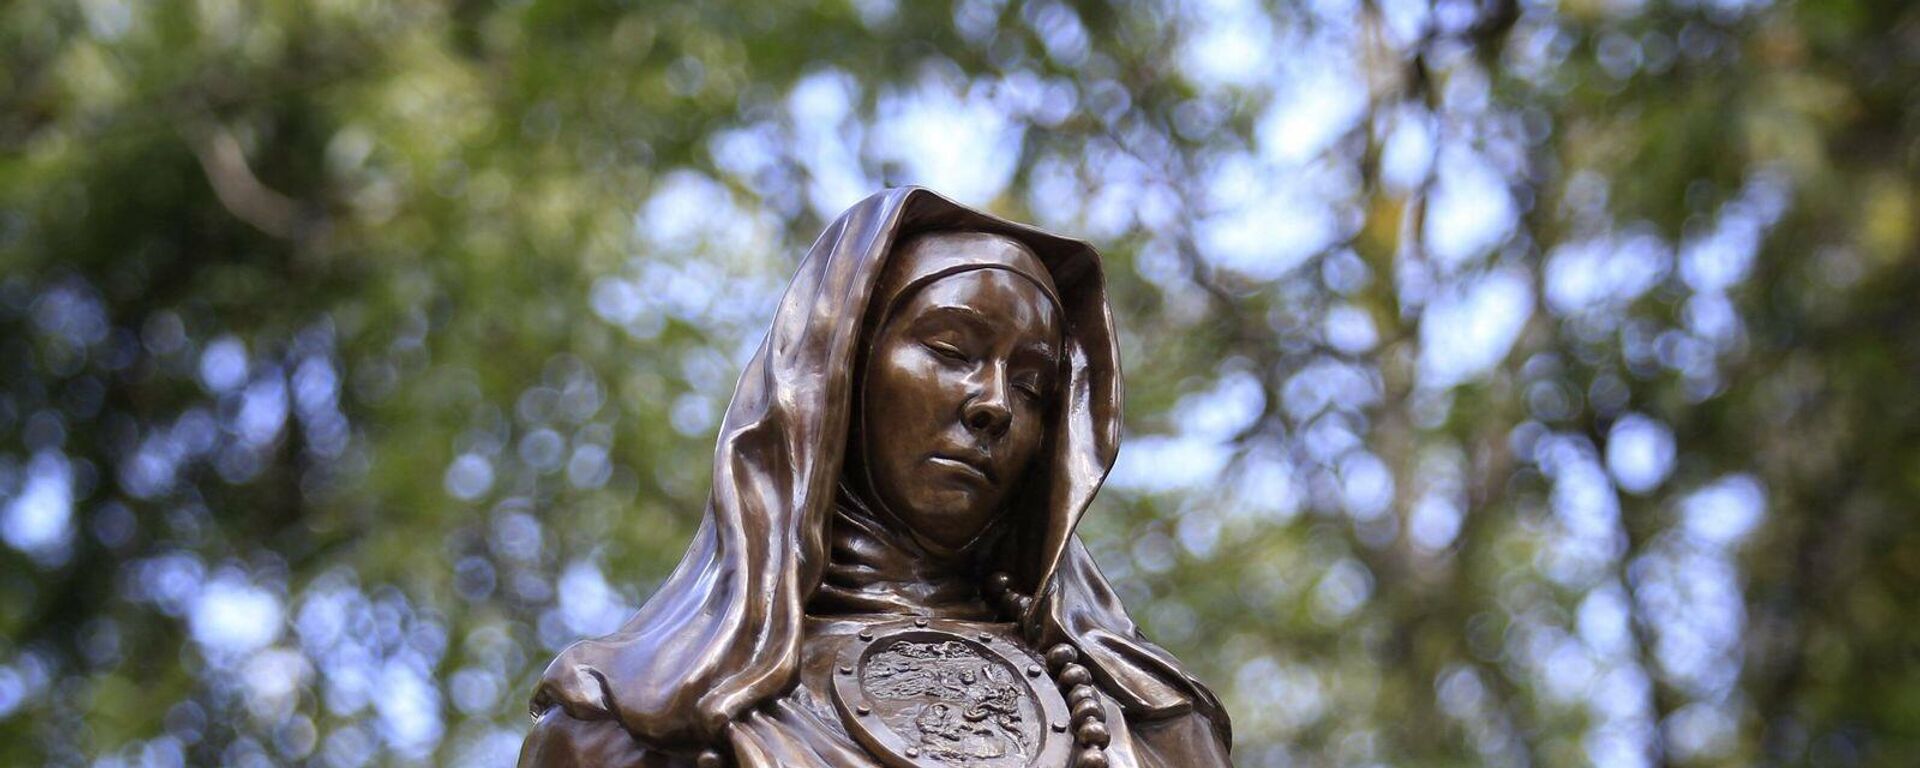 Sor Juana Inés de la Cruz, escultura - Sputnik Mundo, 1920, 29.09.2021